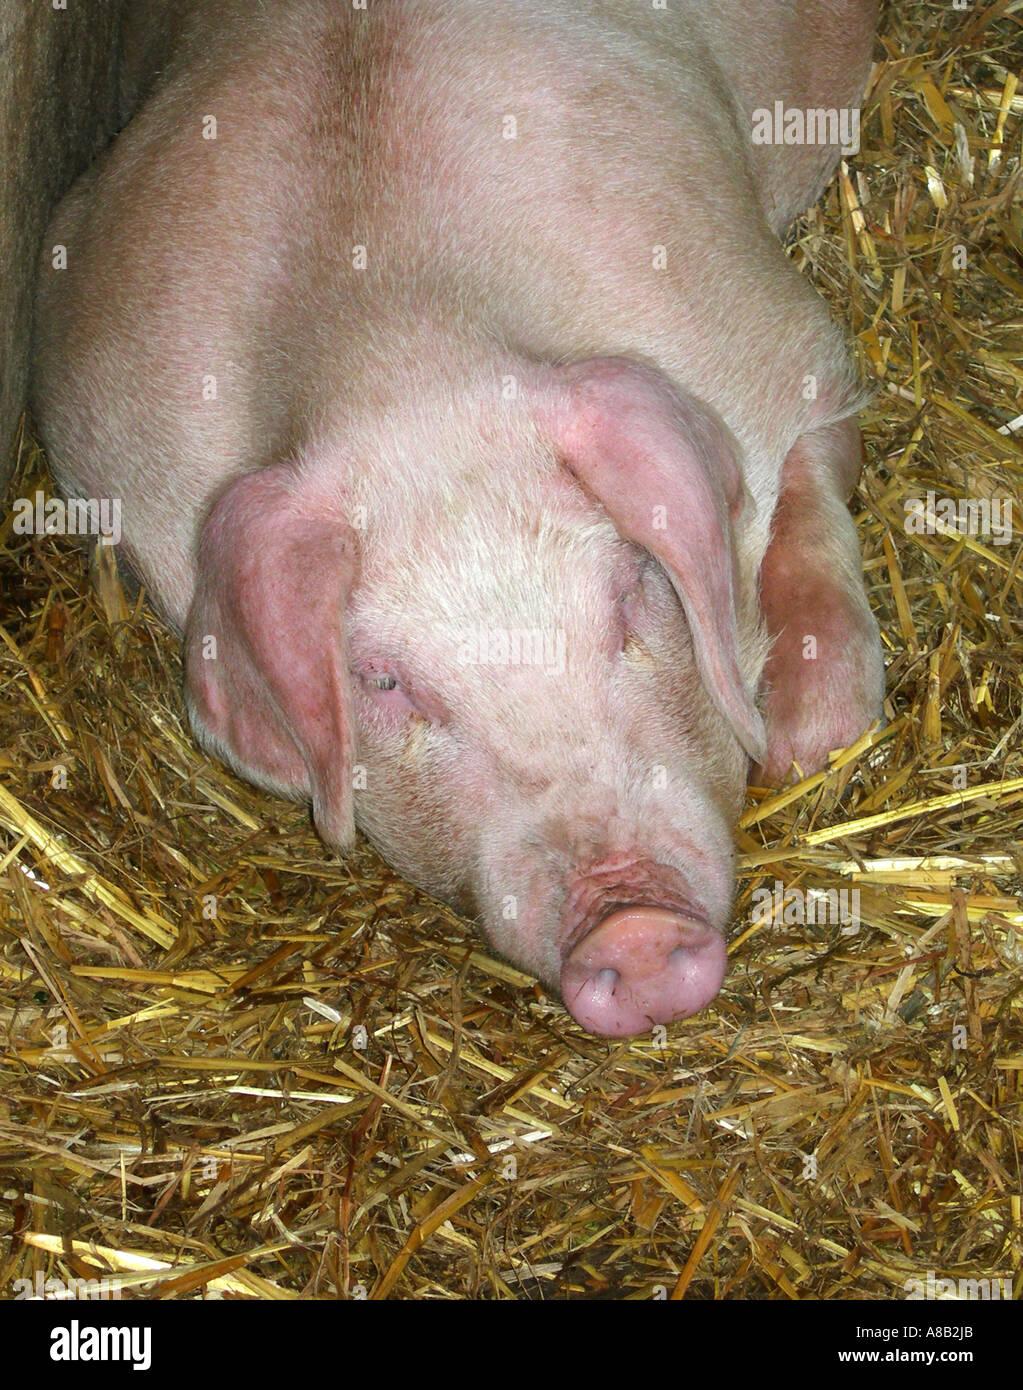 Cochon de ferme de dormir sur un lit de paille dans une grange Banque D'Images